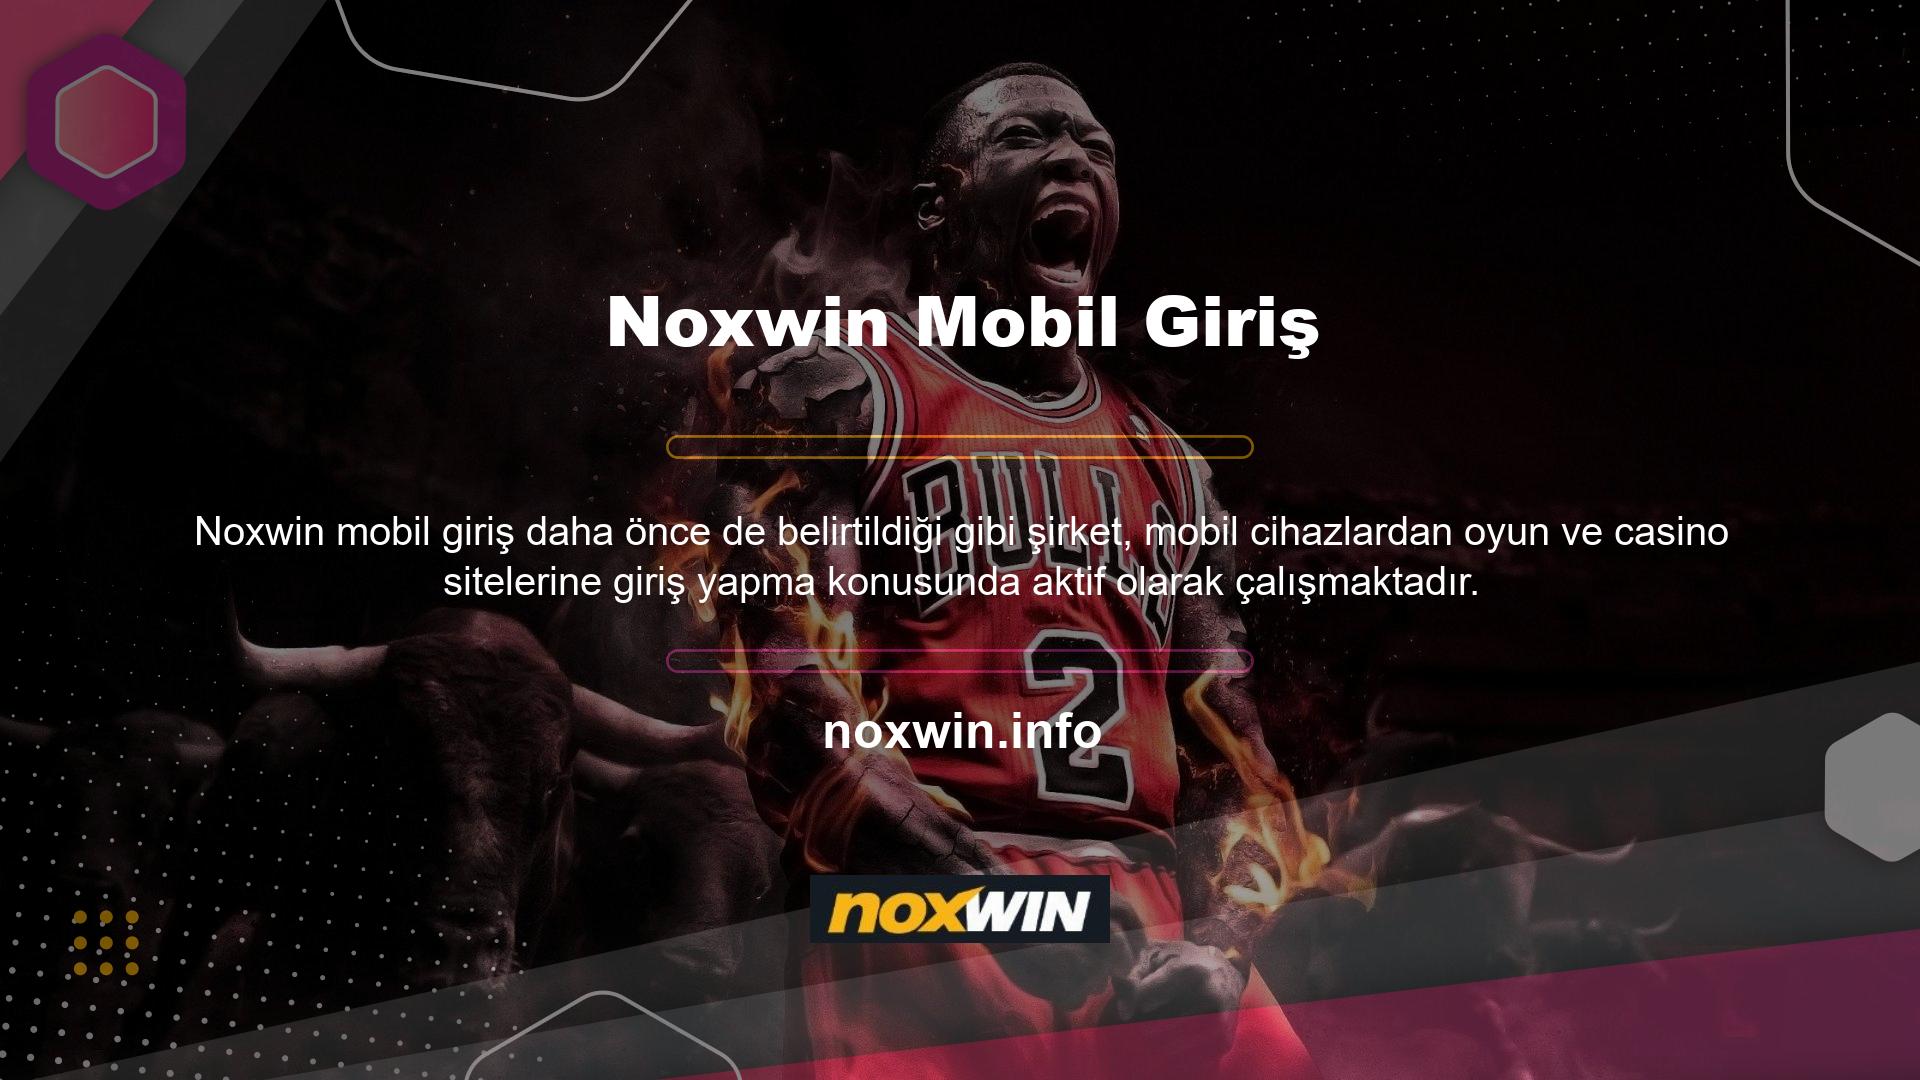 Noxwin Mobil'e ulaşmak için lütfen yapmanız gereken adımları bize bildirin